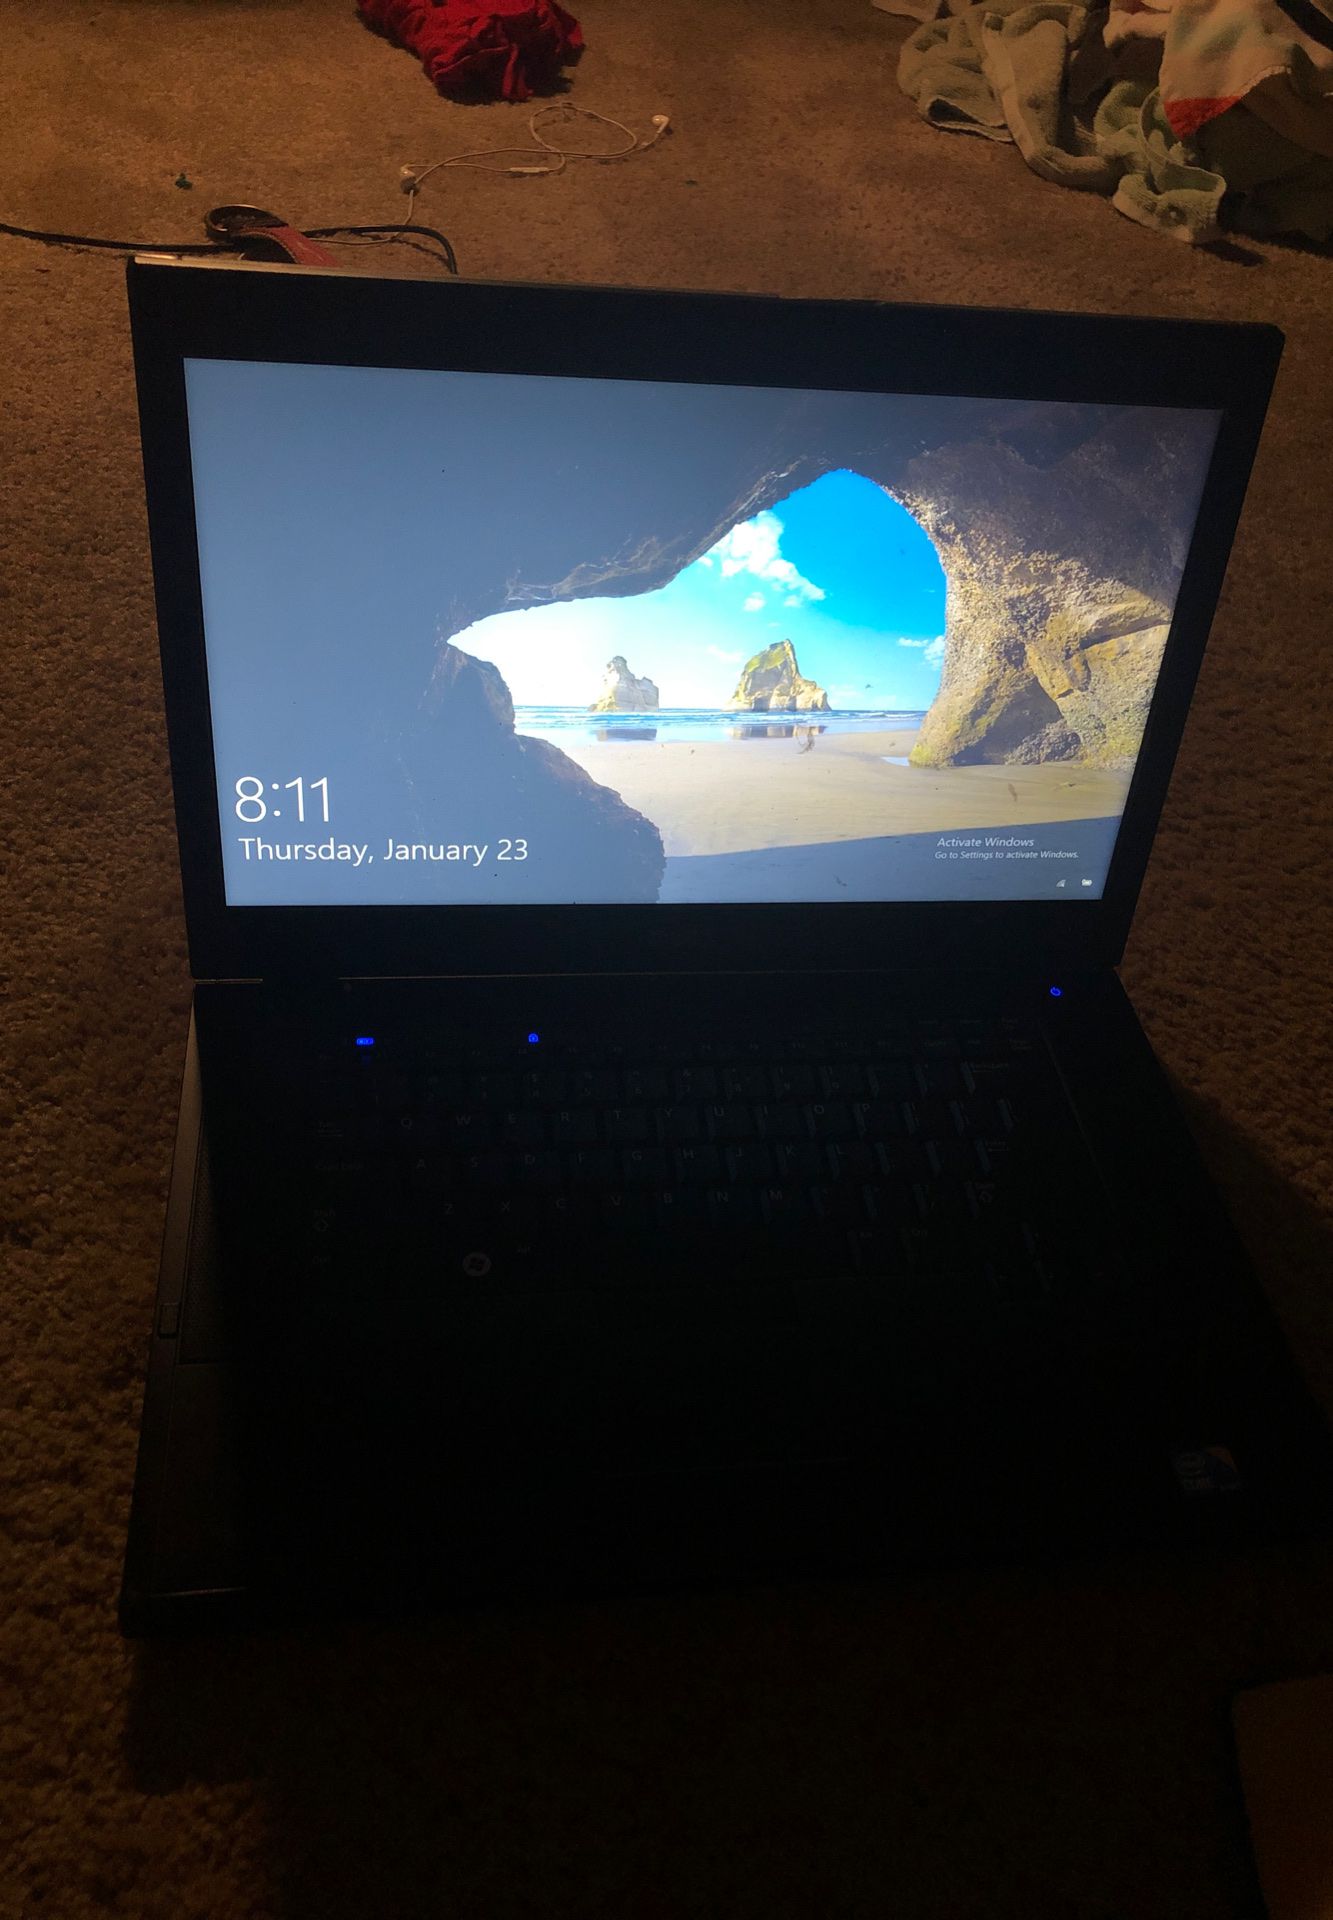 Dell latitude E6510 laptop